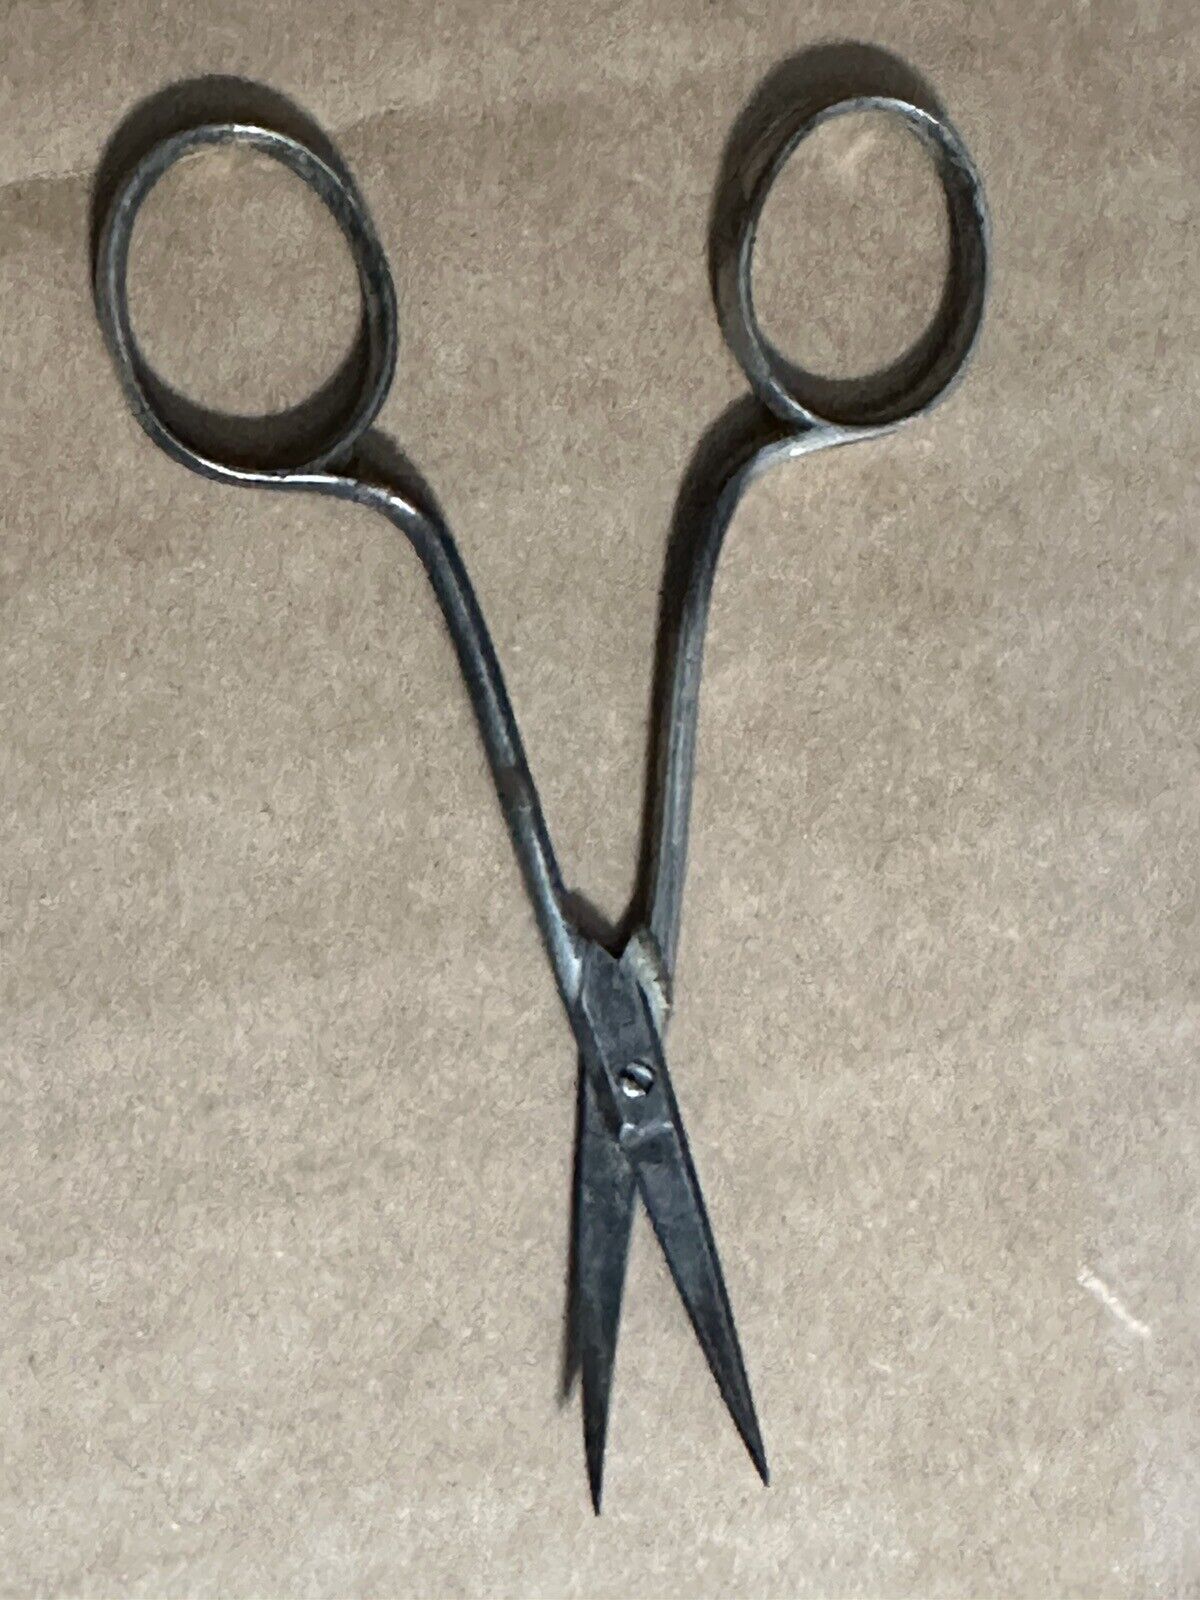 Keen Kutter 4 1/4” Scissors Vintage Germany